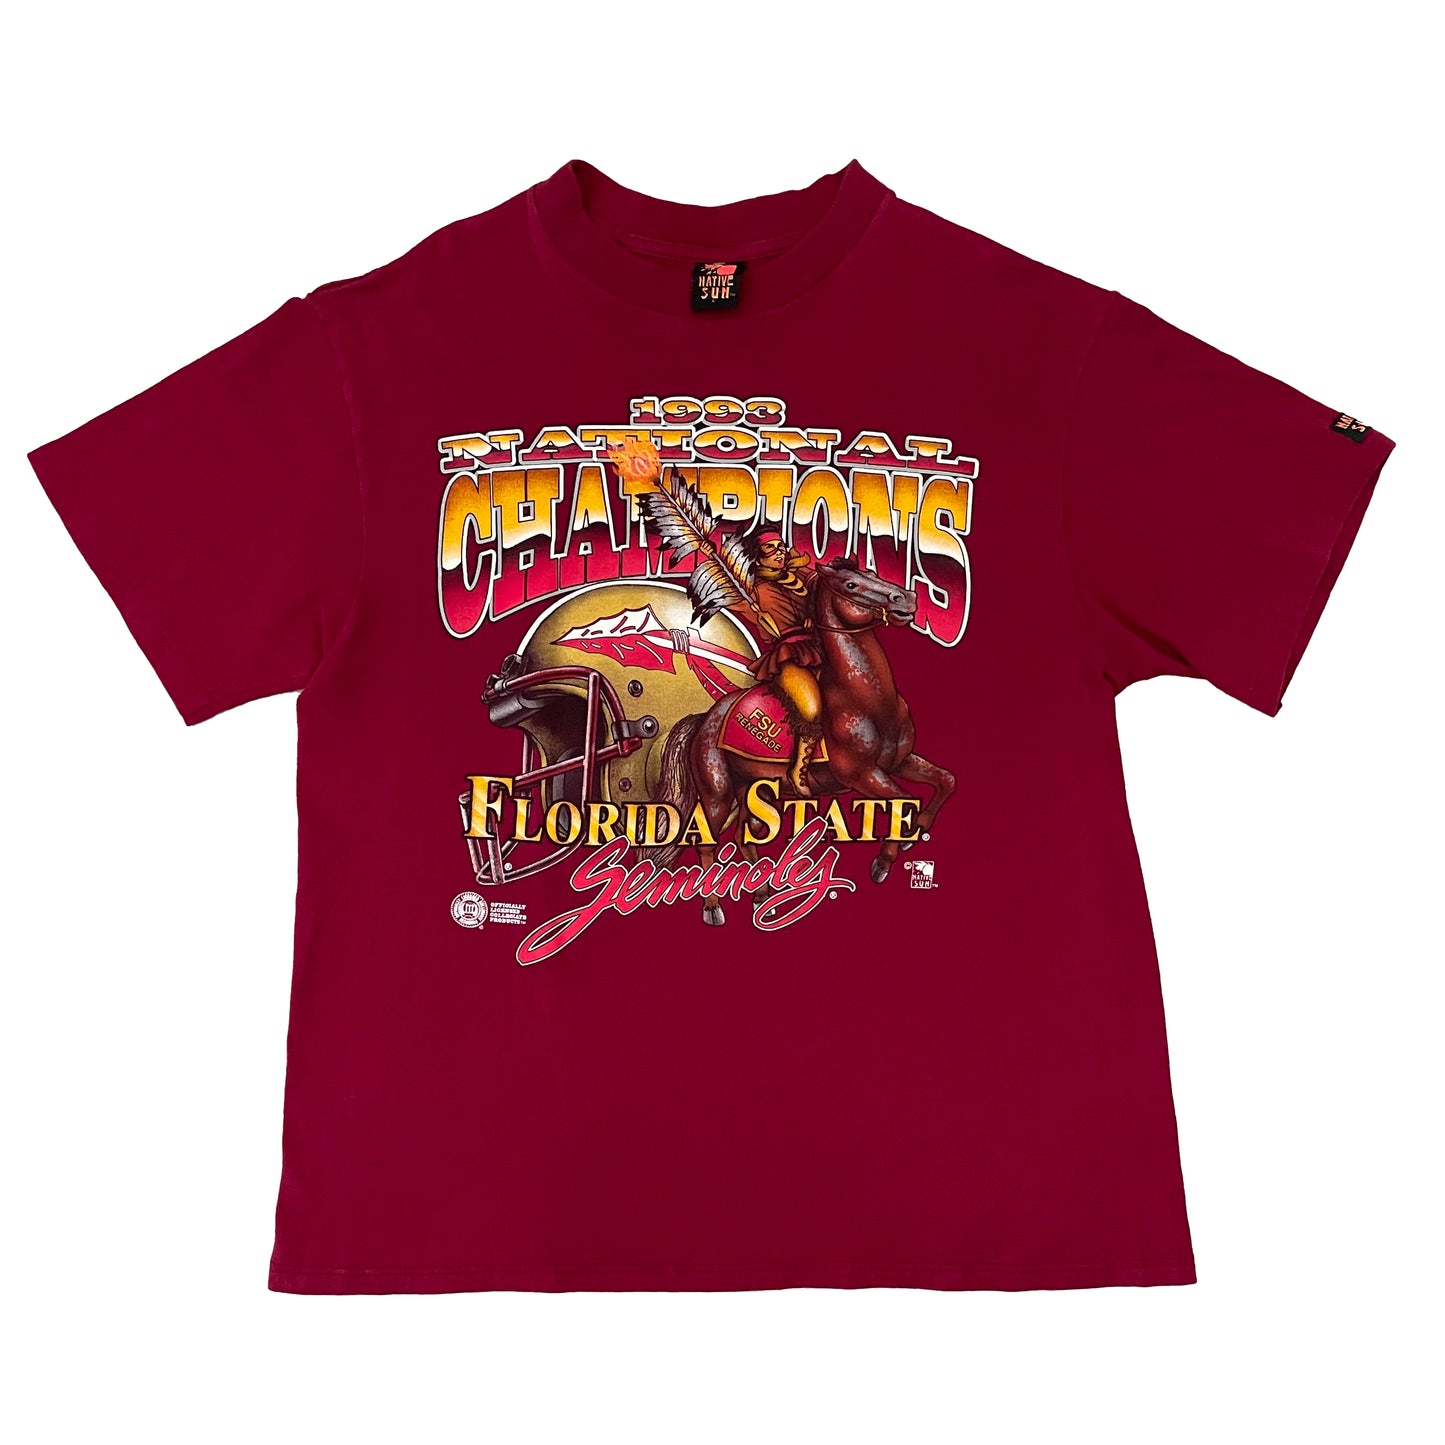 Florida State Seminoles FSU 1993 National Champions shirt size LARGE